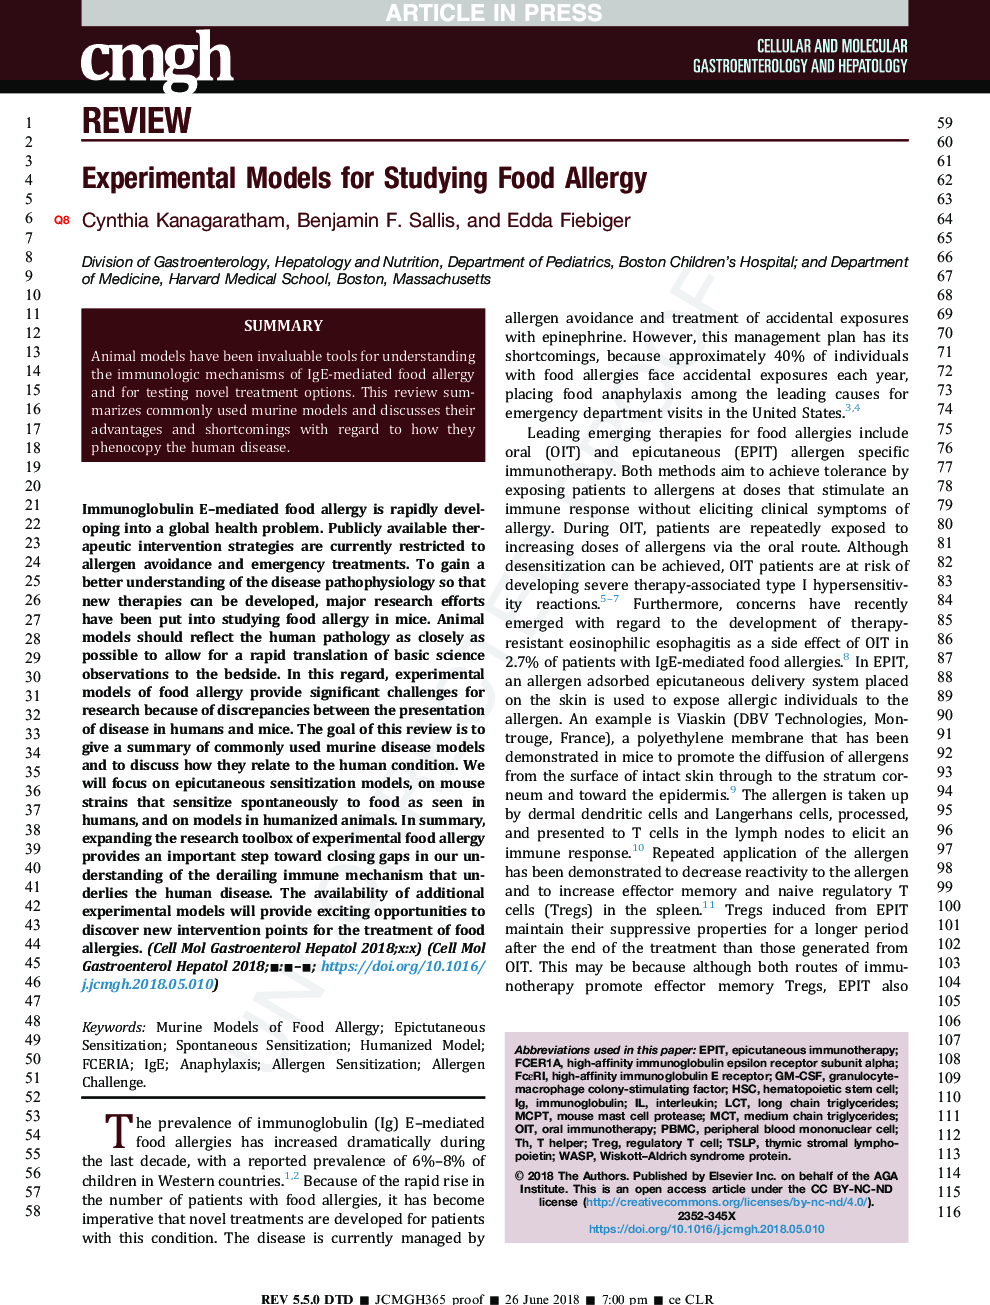 مدل های تجربی برای مطالعه آلرژی غذایی